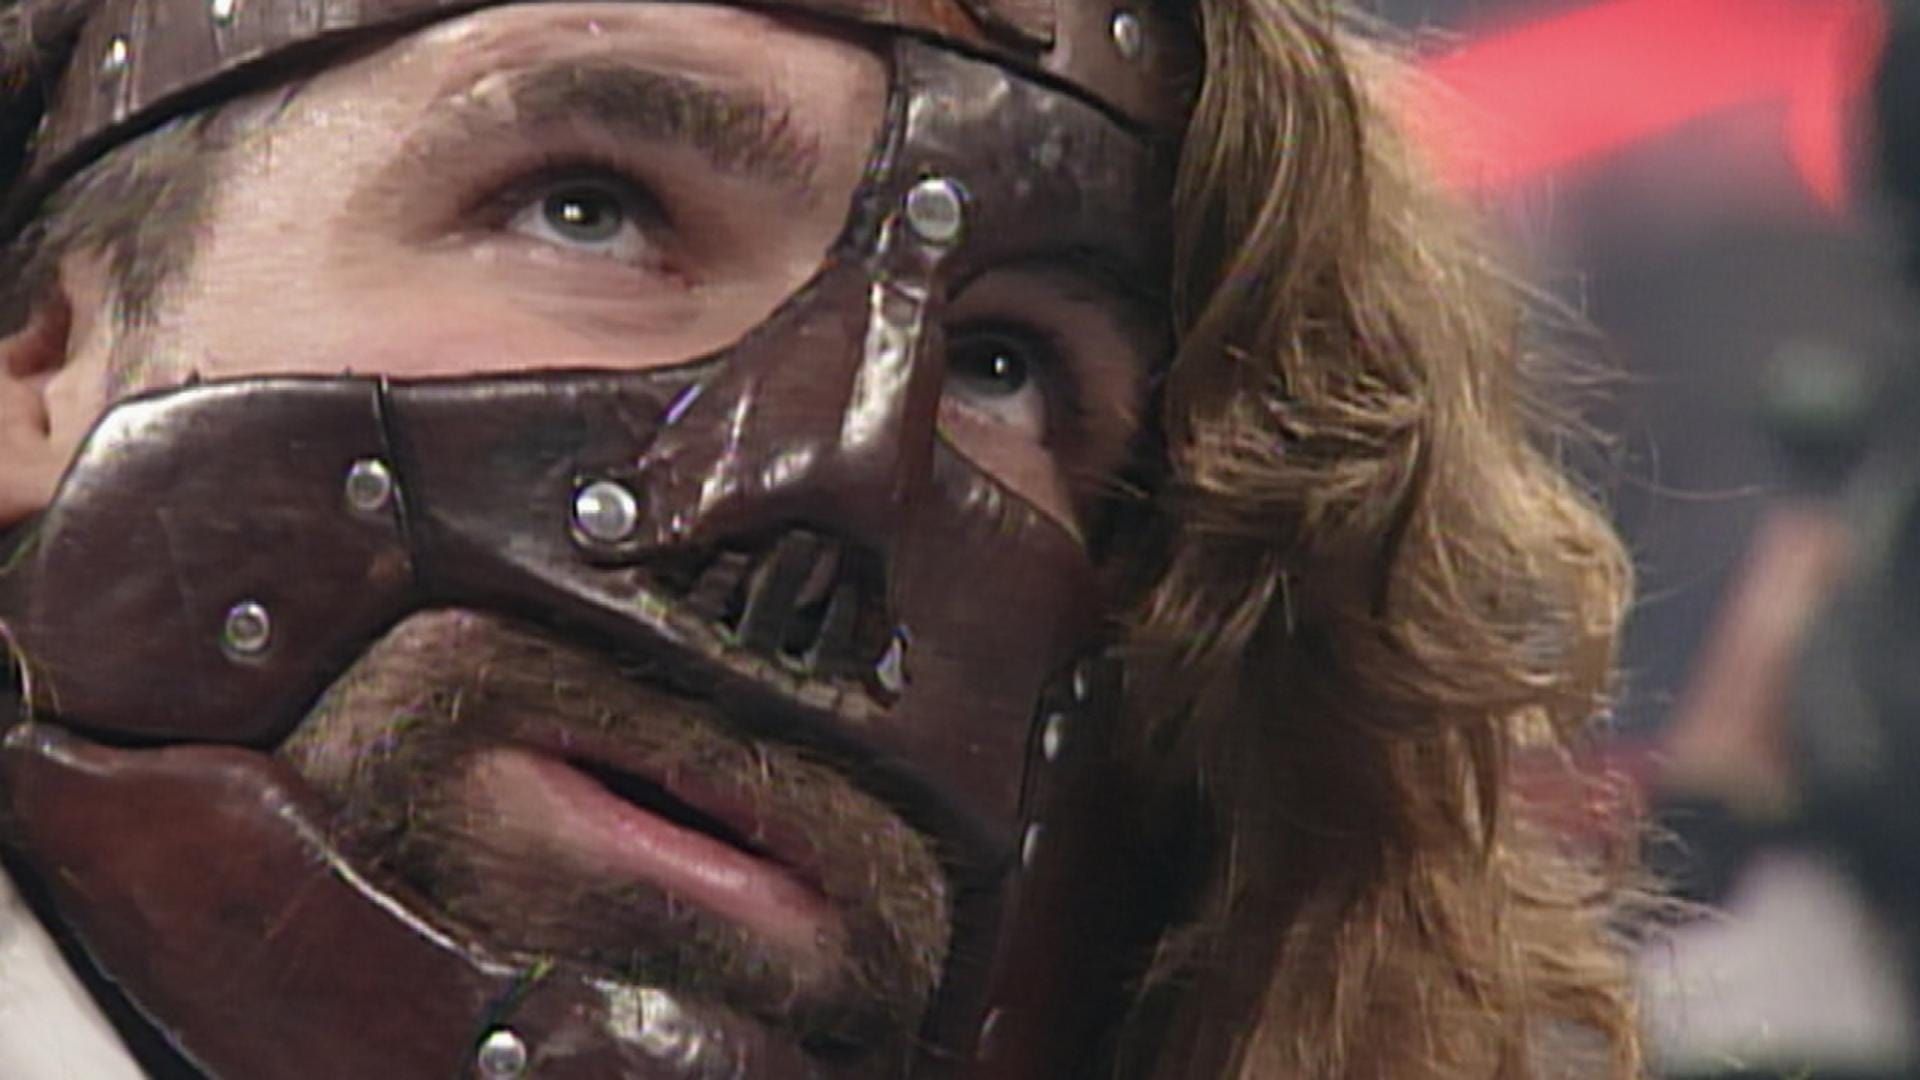 WWE Raw background